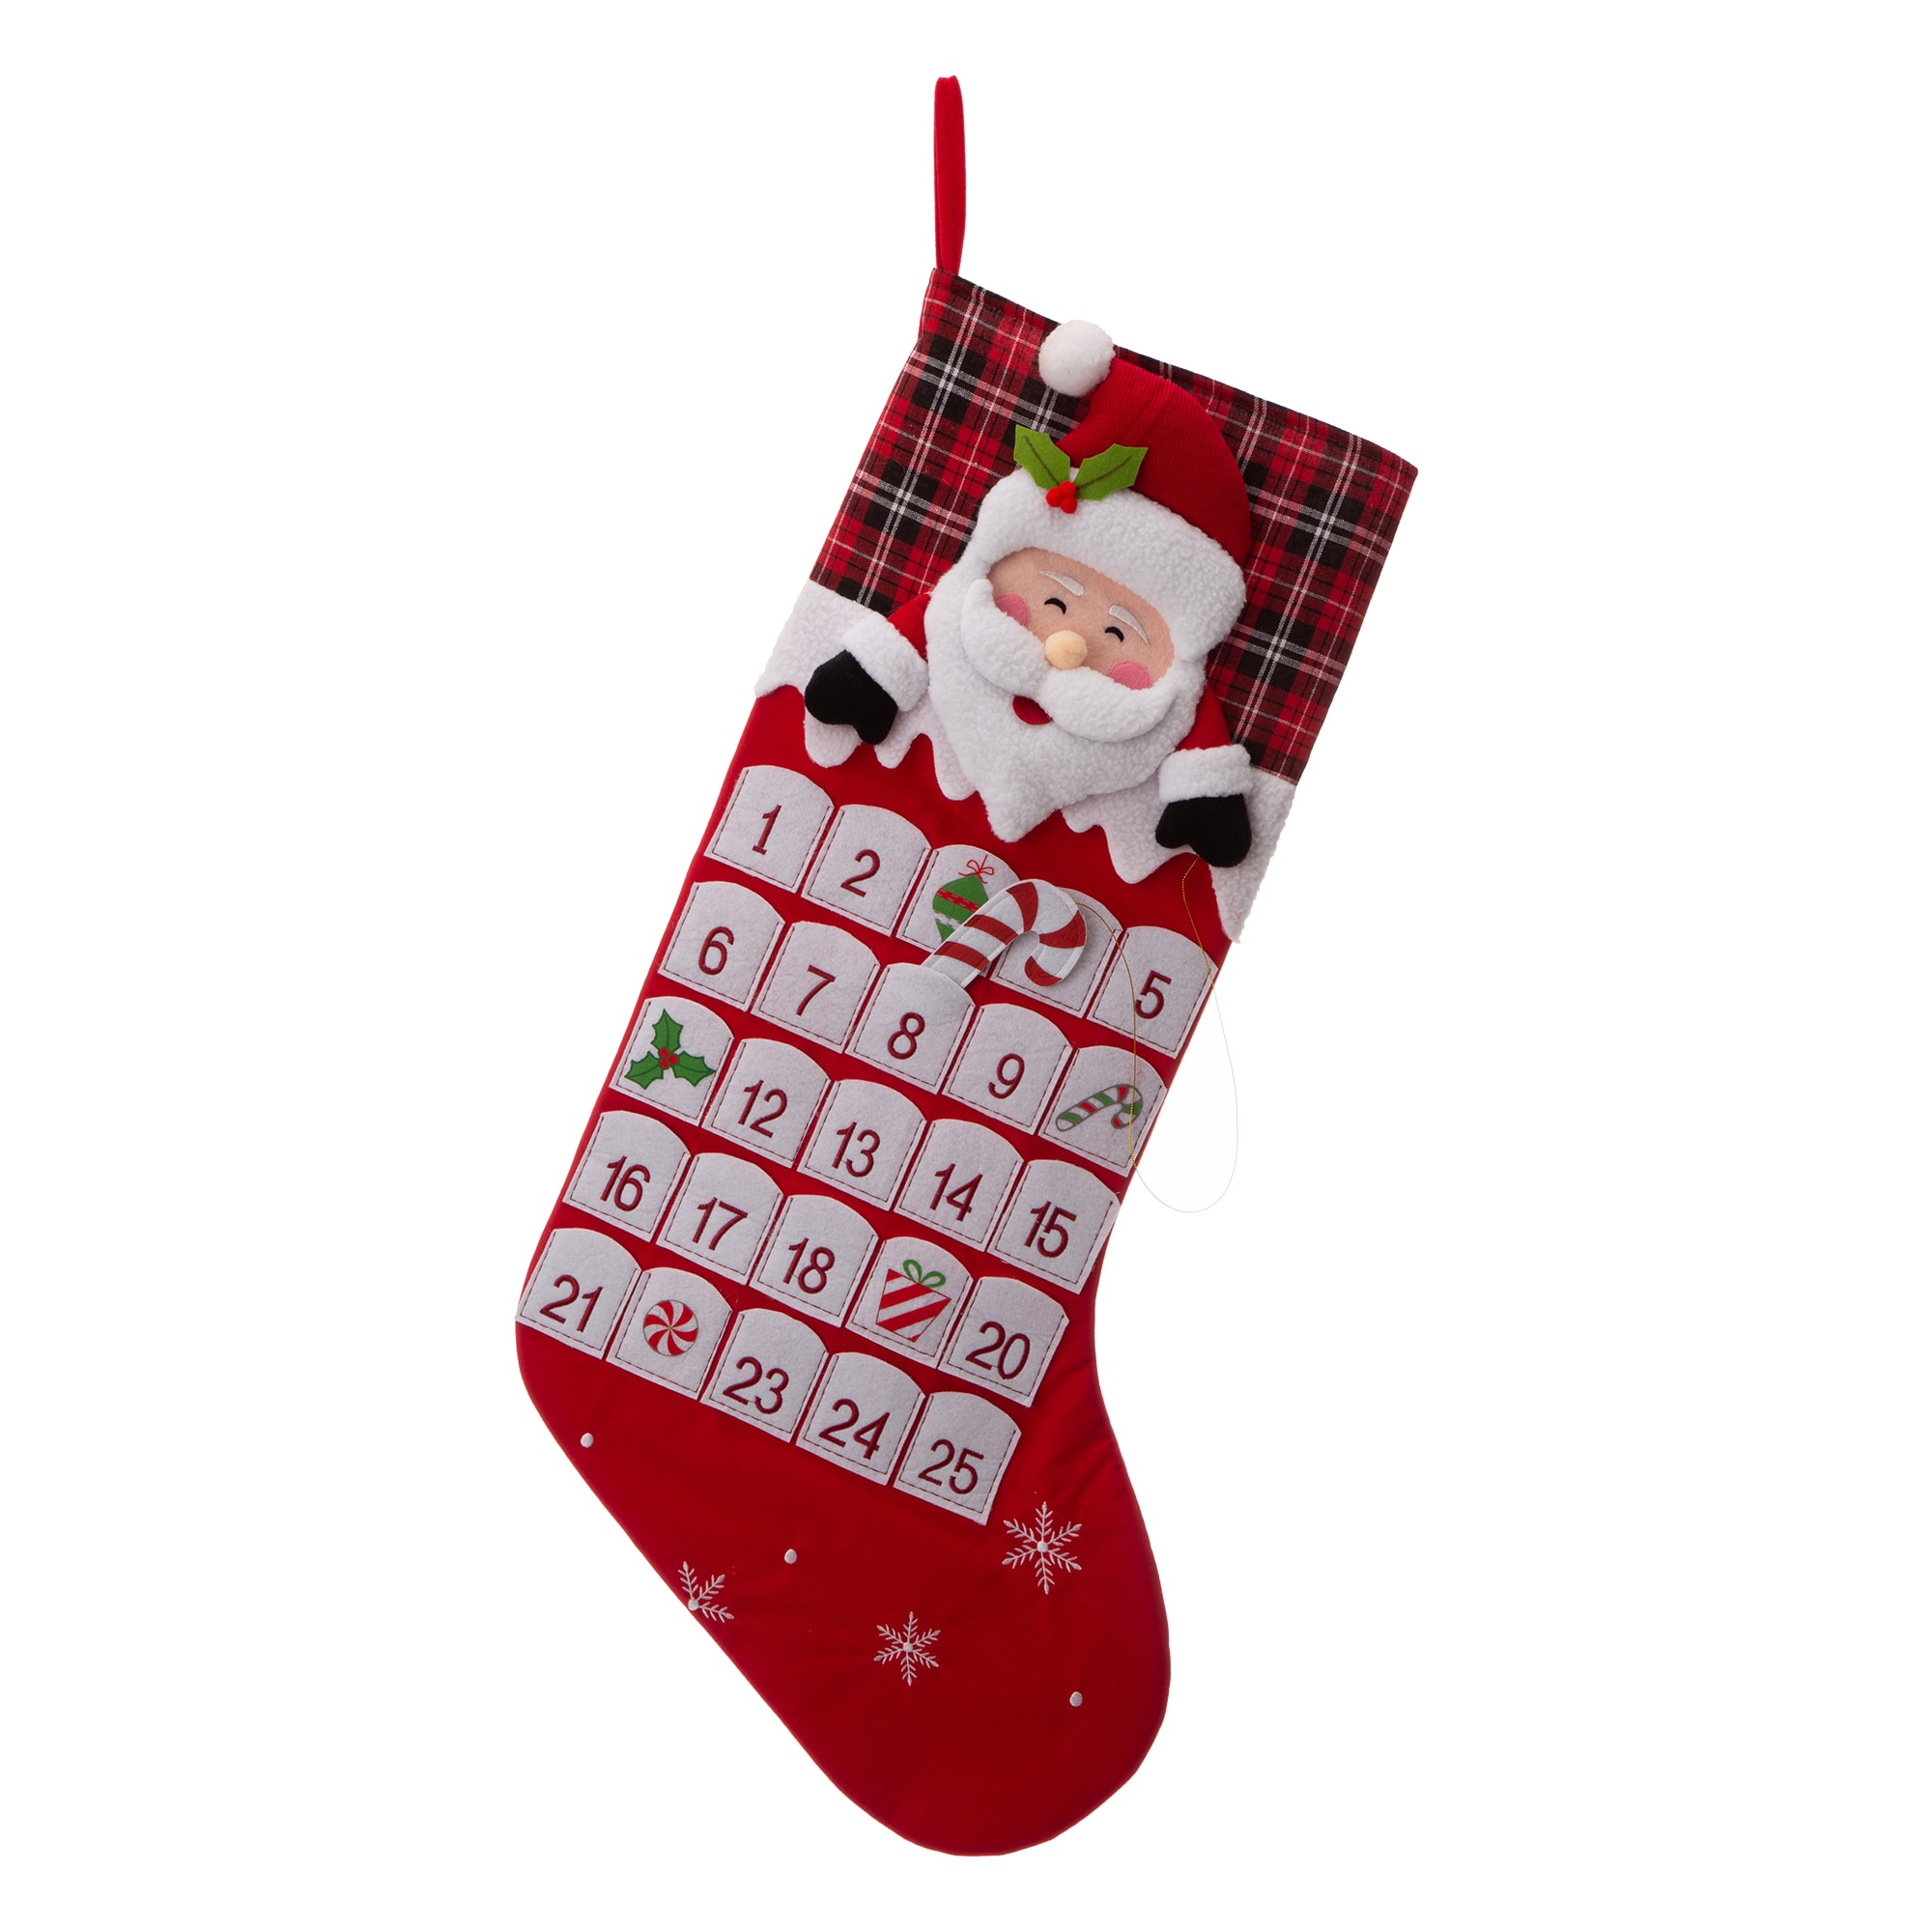 Happy Holidays 36in Jumbo Felt Christmas Stockings in Snowman, Reindeer,  Santa - Set of 3